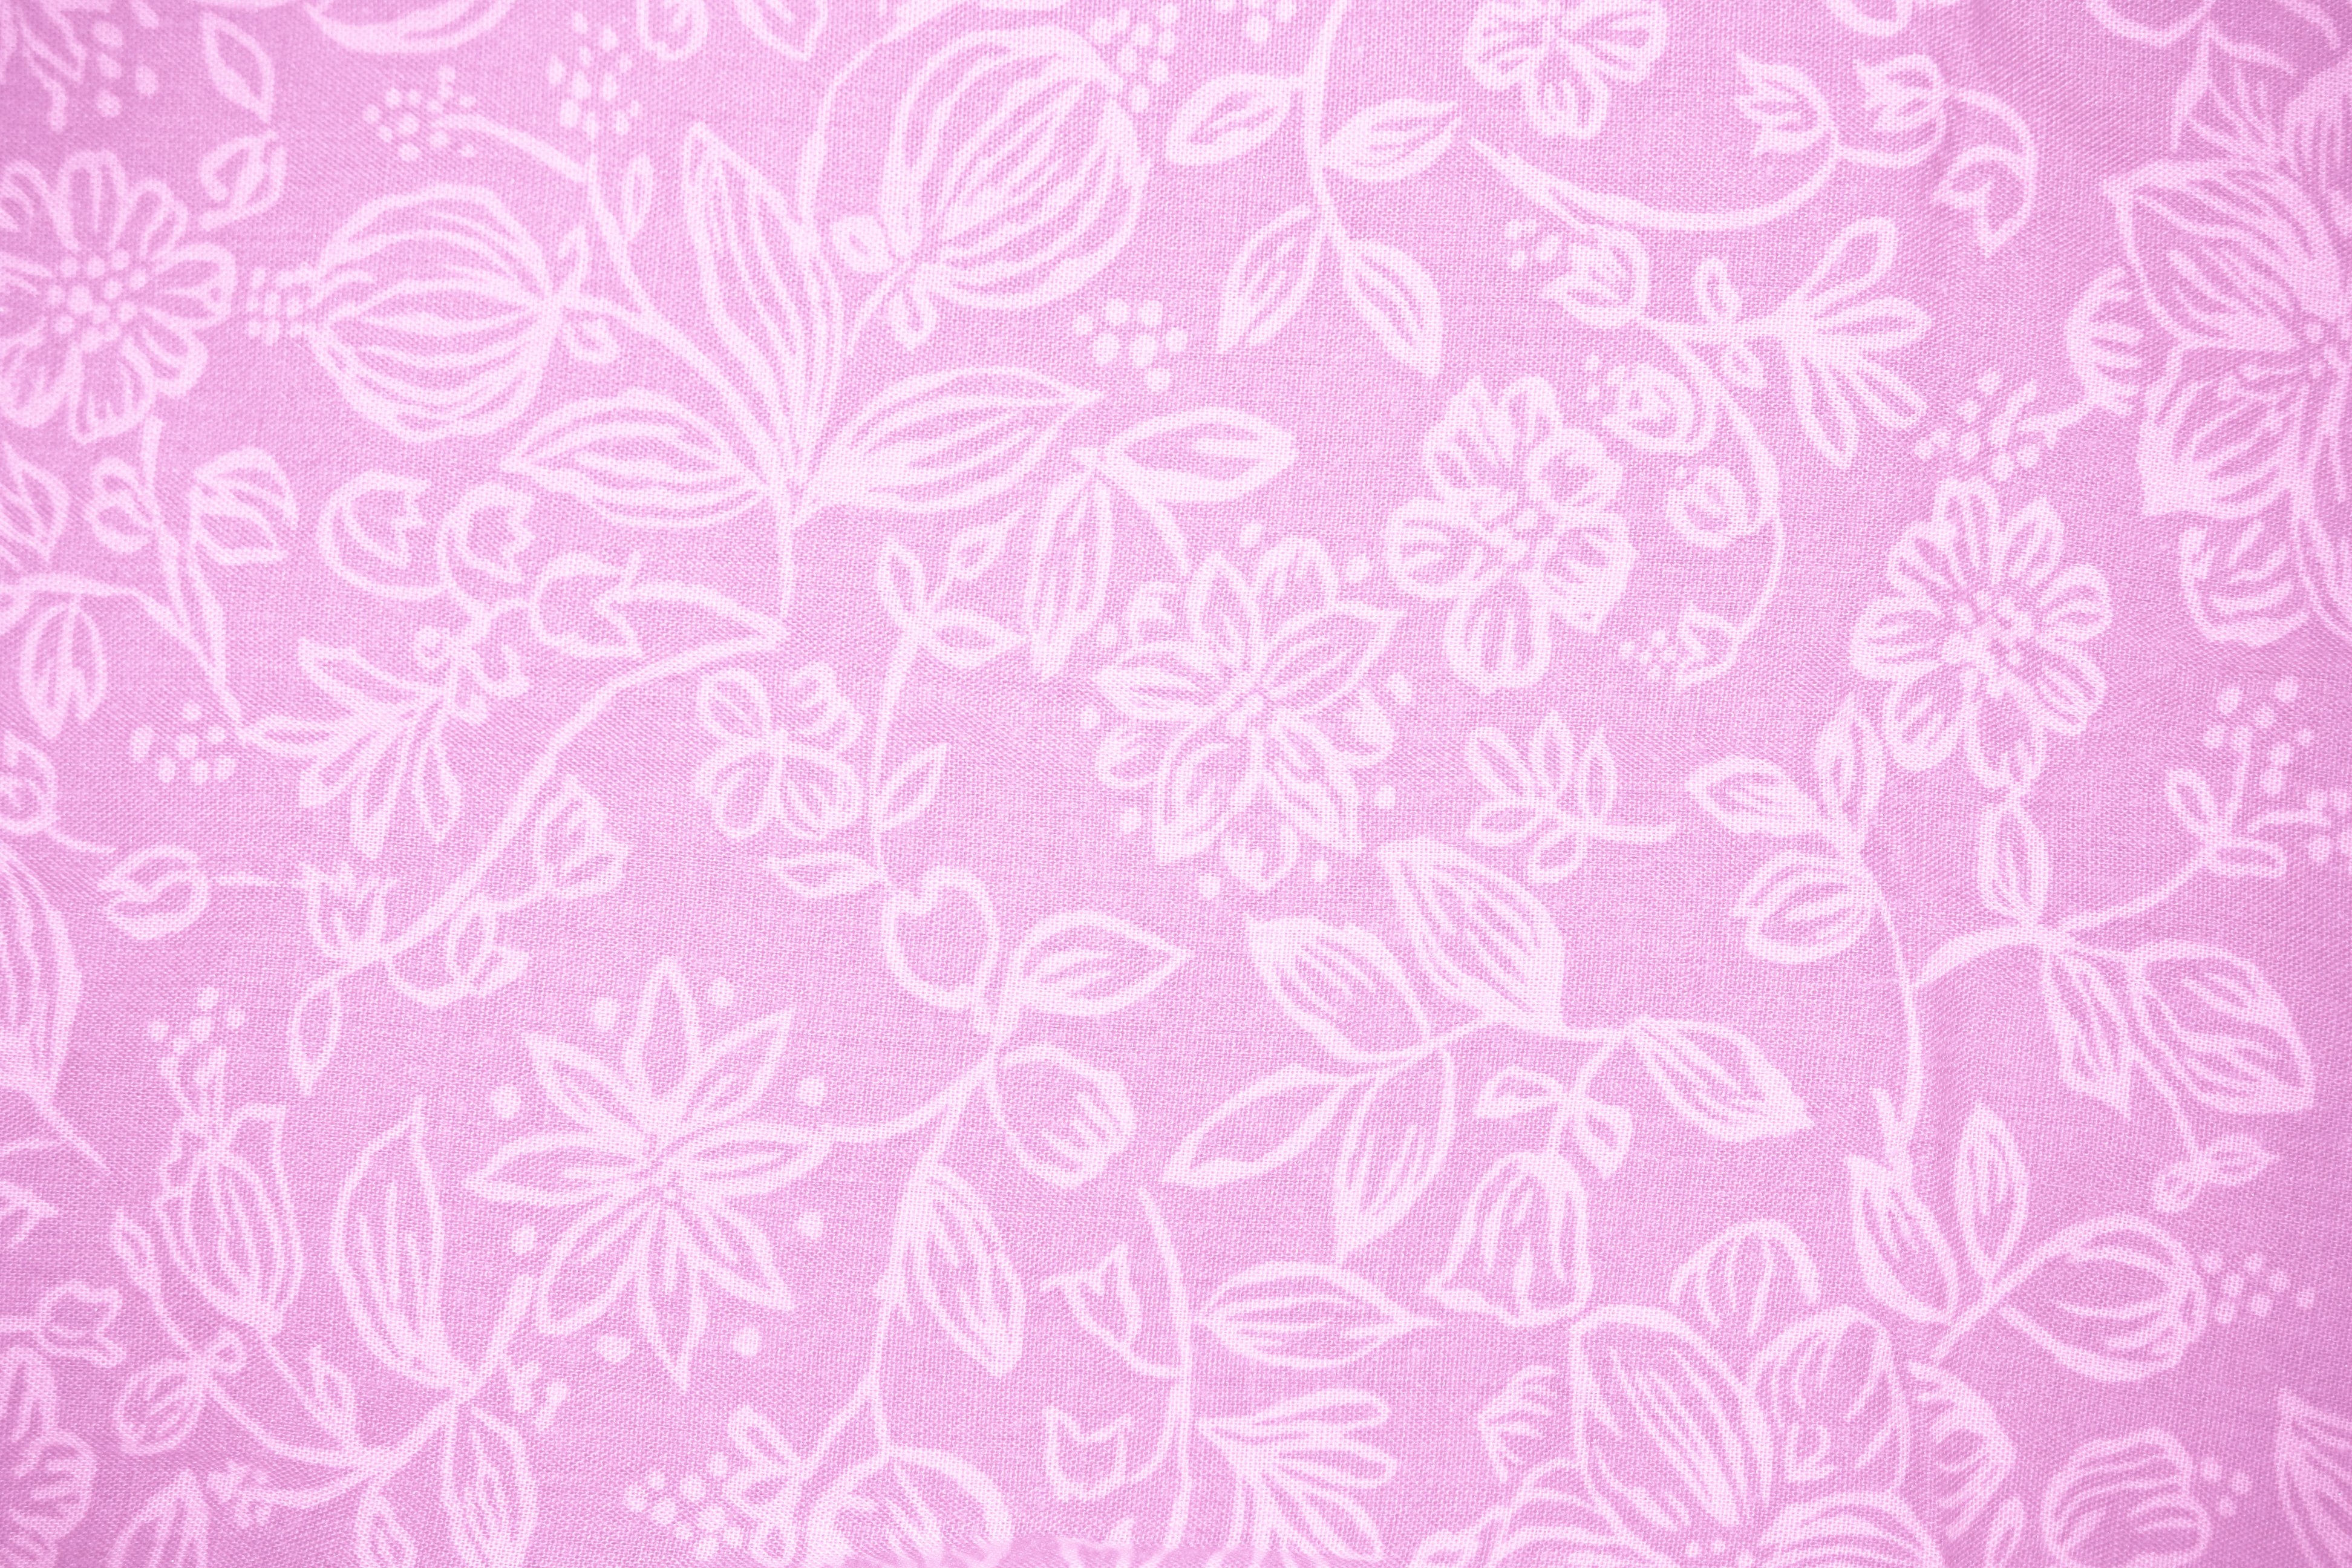 Indian Velvet Art  Paintings Pink Wallpaper Price in India  Buy Indian  Velvet Art  Paintings Pink Wallpaper online at Flipkartcom